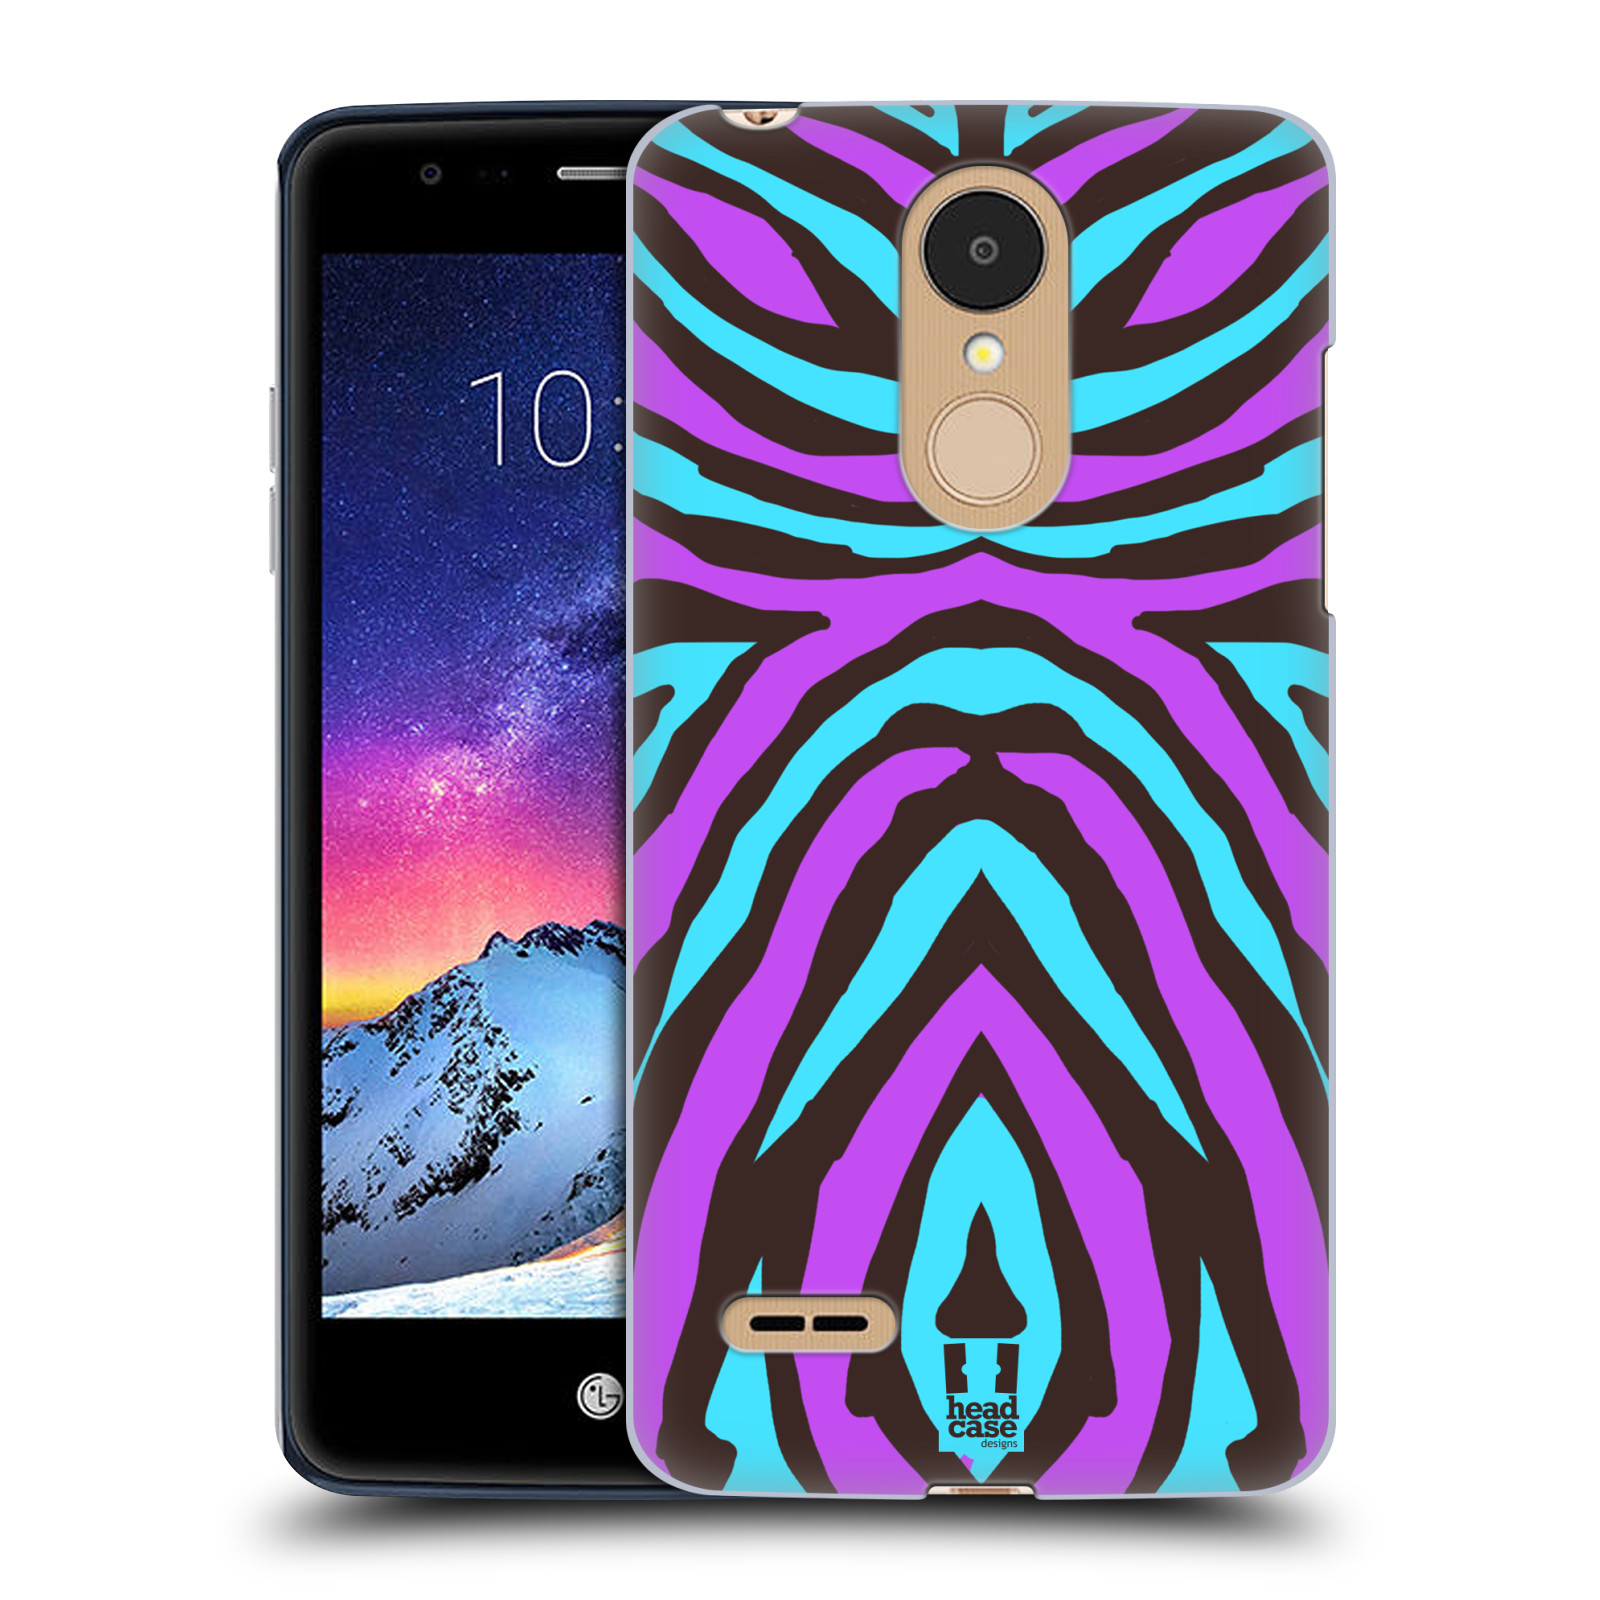 HEAD CASE plastový obal na mobil LG K9 / K8 2018 vzor Divočina zvíře 2 bláznivé pruhy fialová a modrá